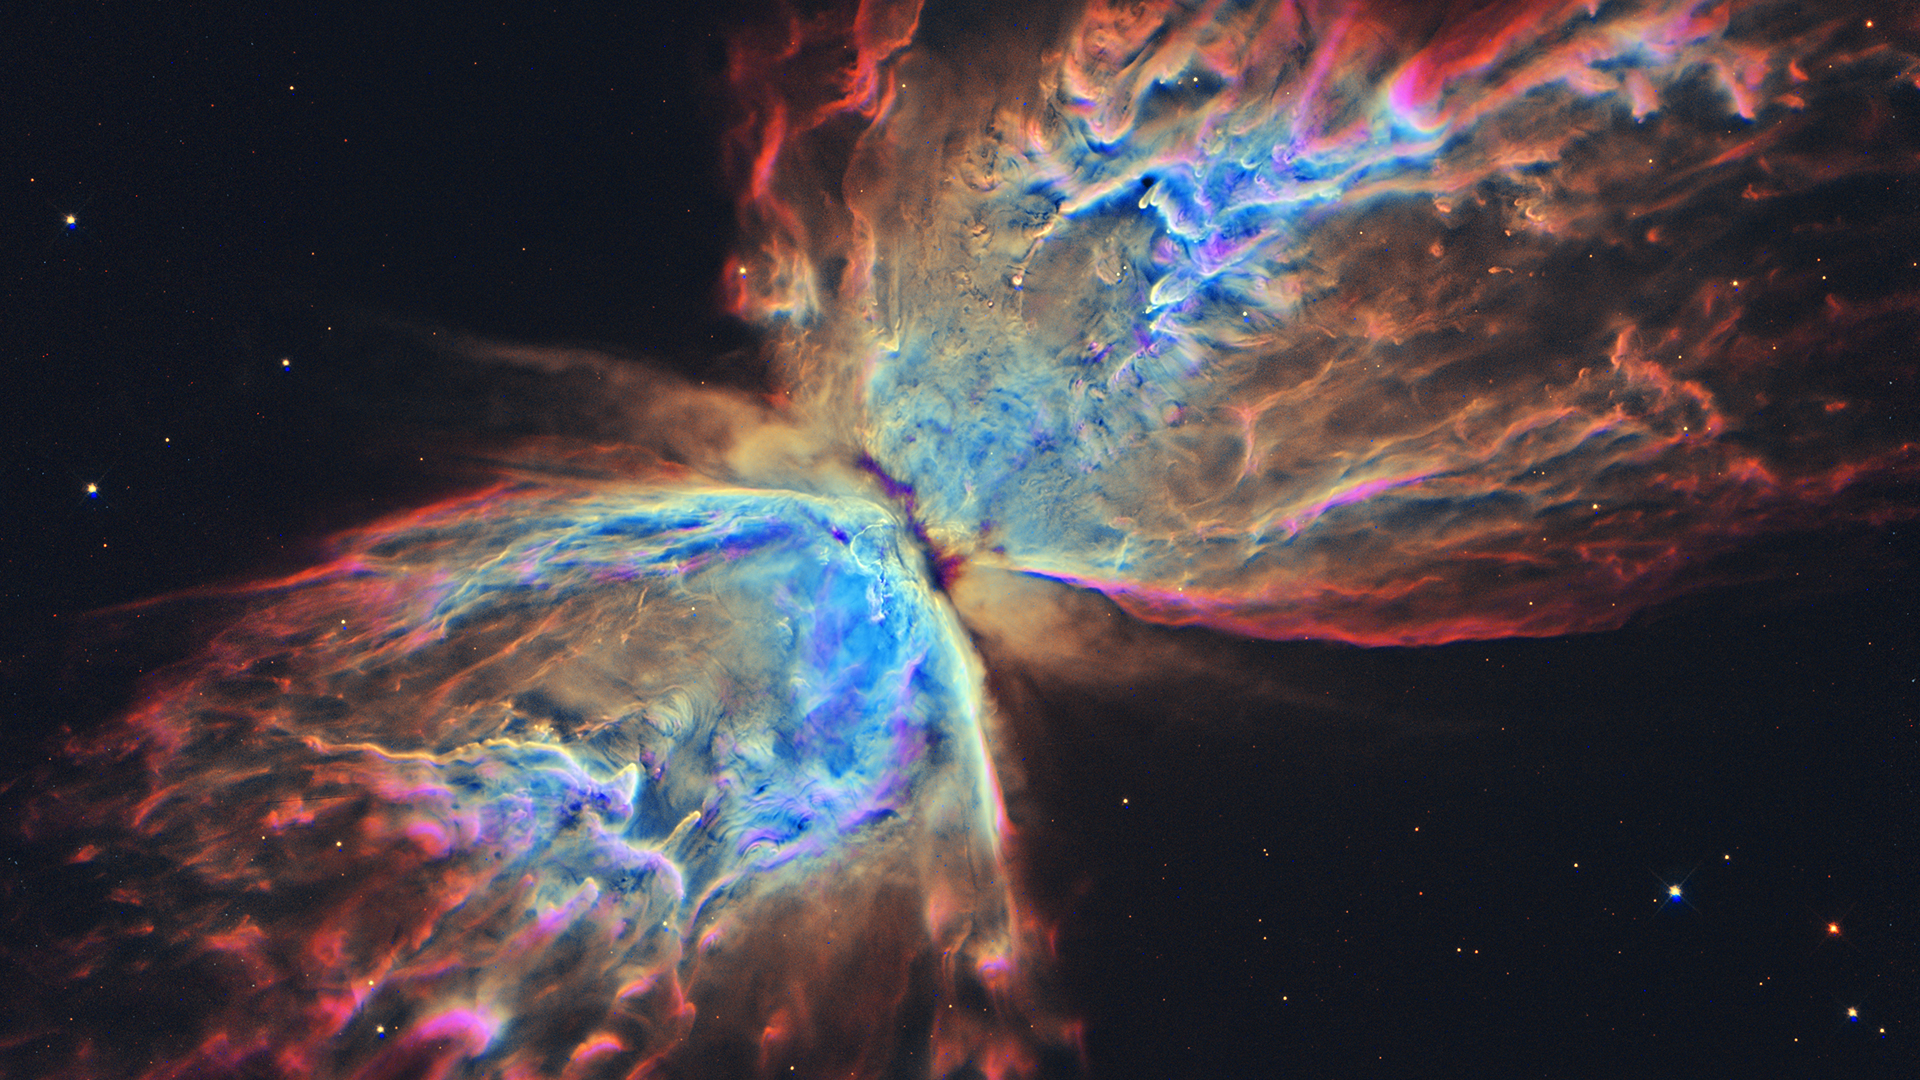 Nebula HD Wallpaper 1920x1080 ID48899